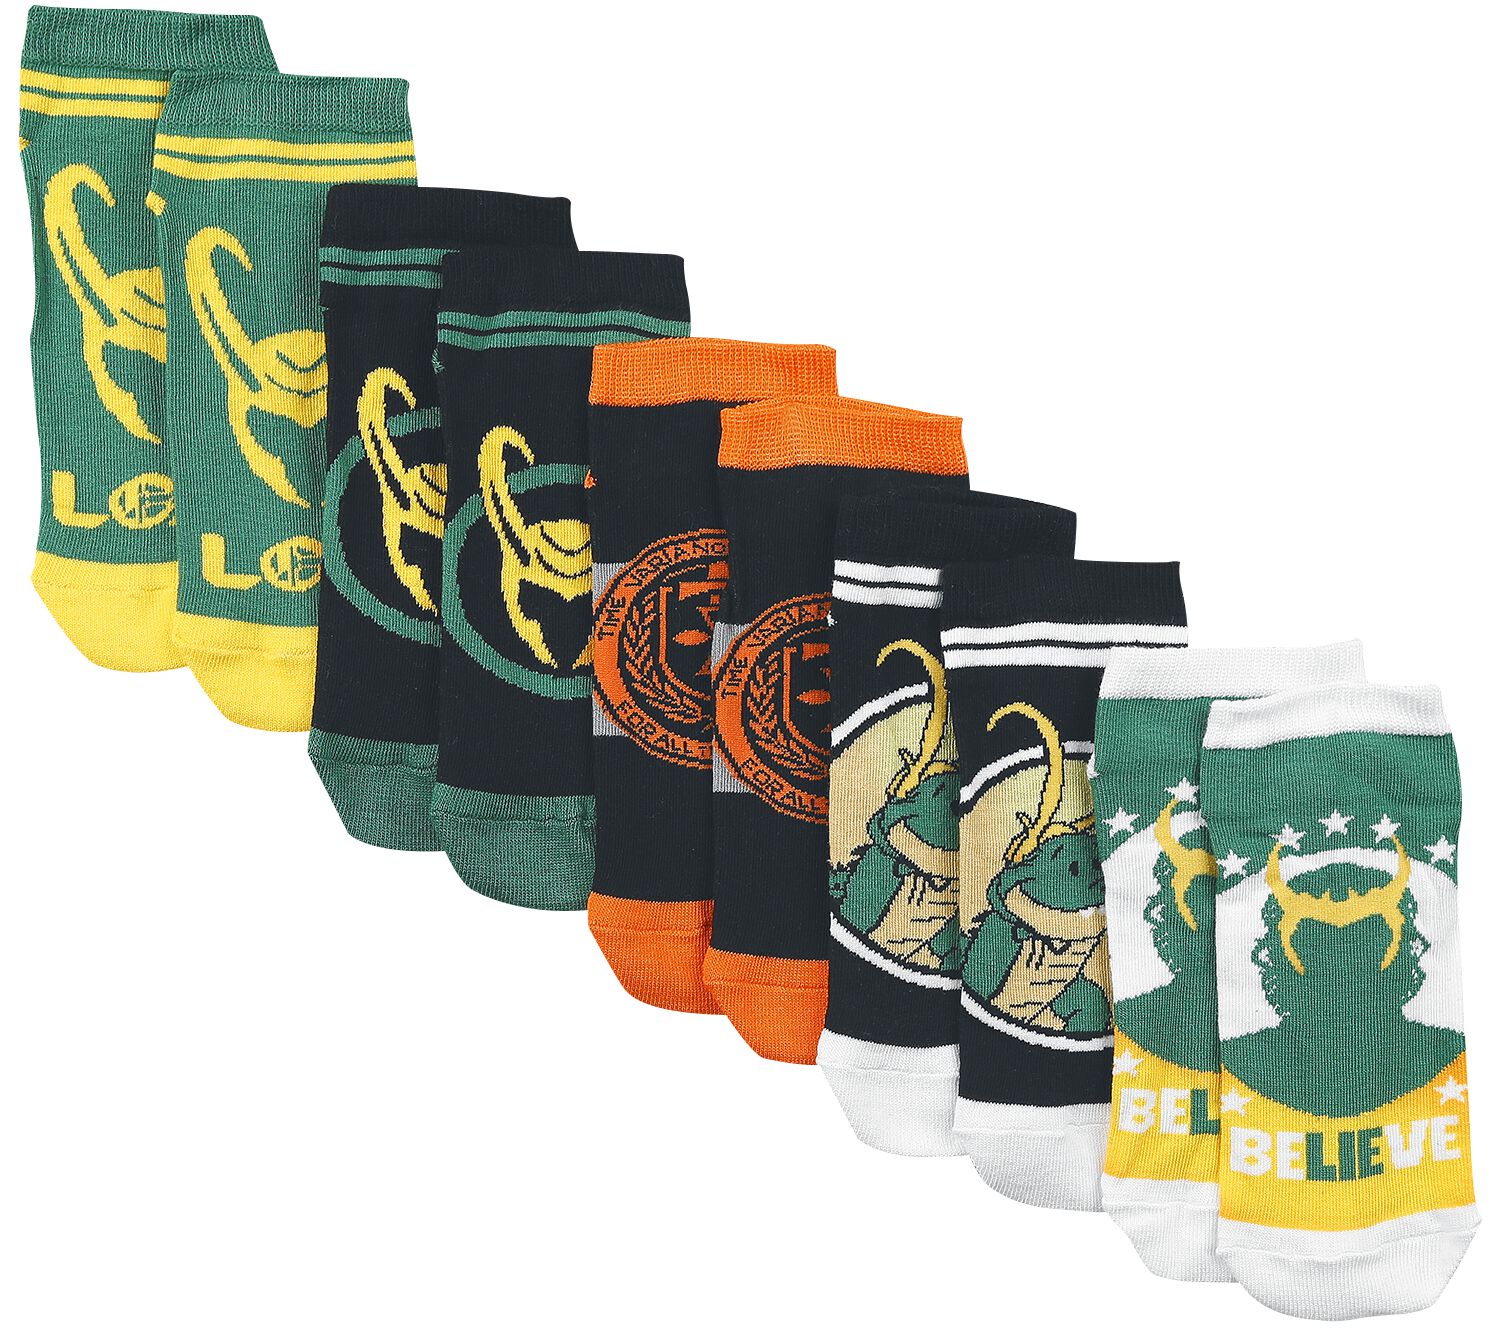 Loki - Marvel Socken - Time Variance Authority - EU35-38 bis EU39-42 - für Damen - Größe EU 39-42 - multicolor  - EMP exklusives Merchandise!